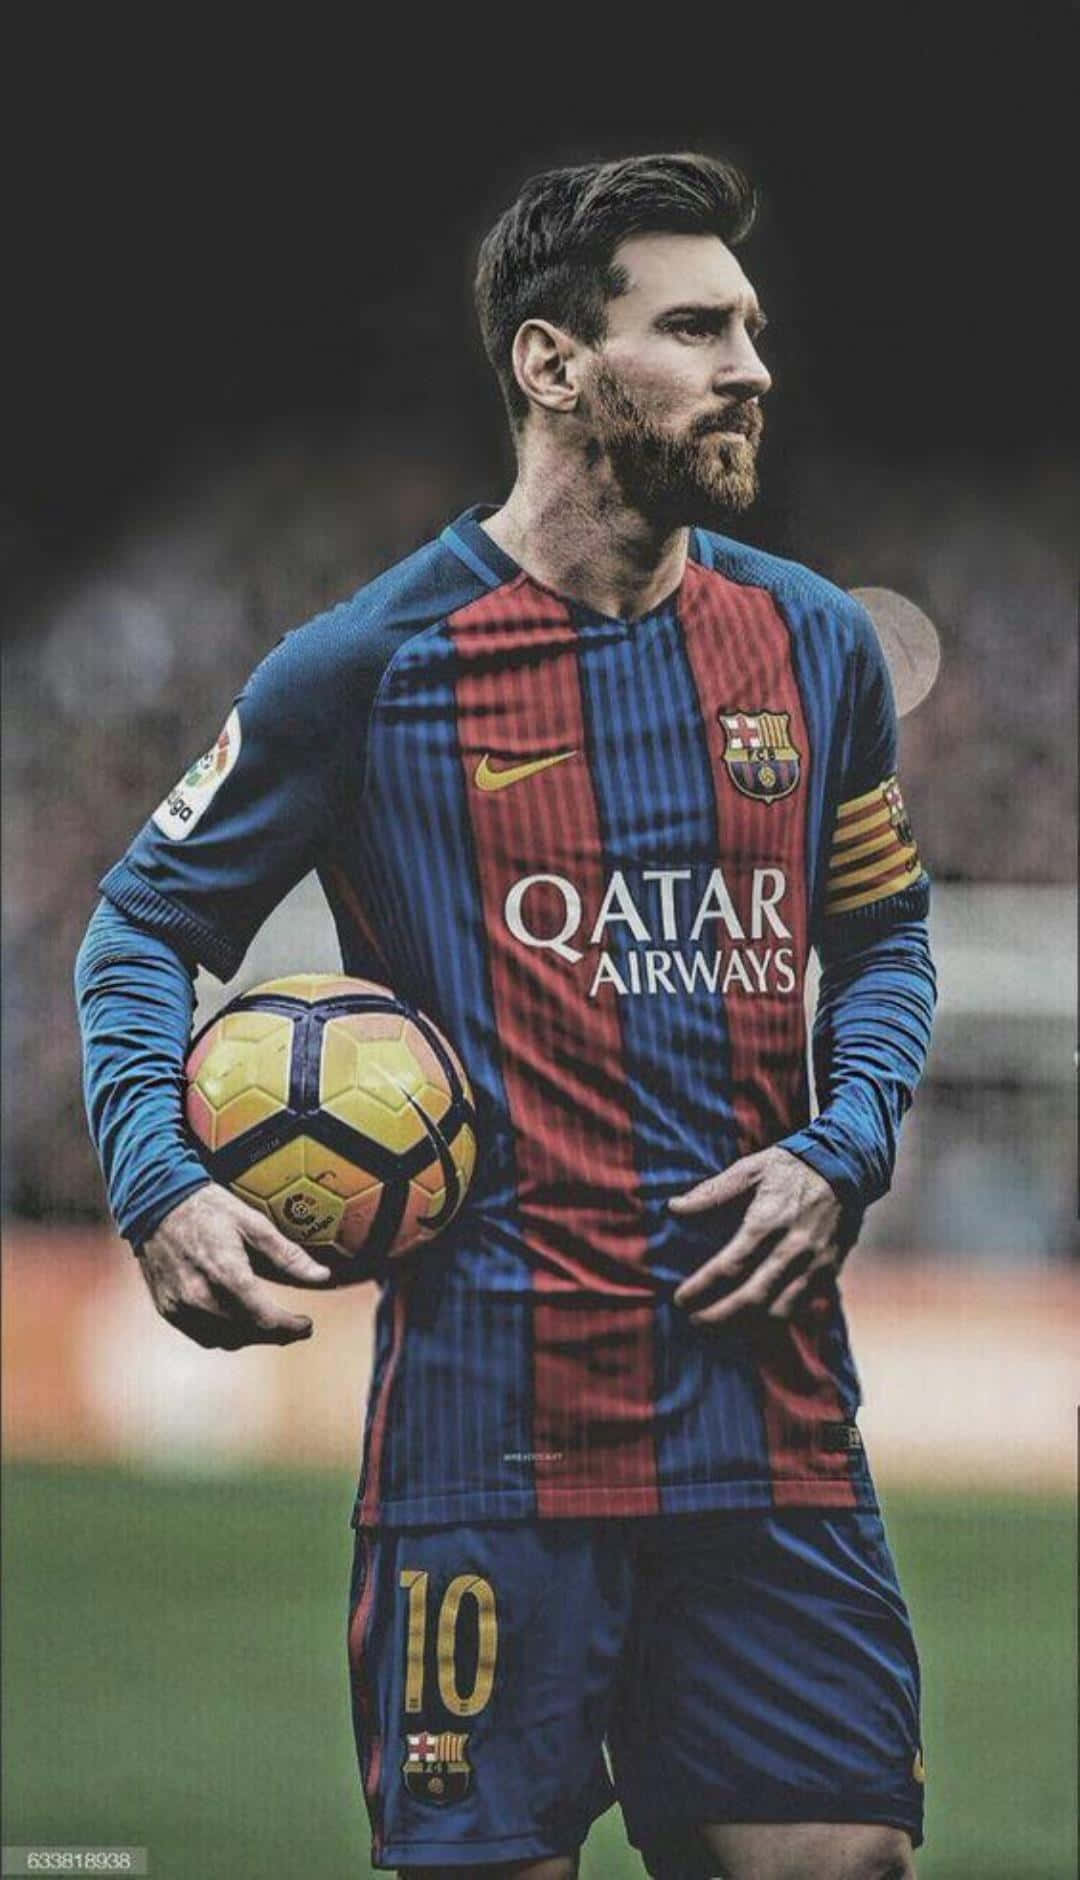 Nếu bạn là fan của Messi và muốn tôn vinh thần tượng của mình trên màn hình iPhone của mình, hình nền Messi chắc chắn là sự lựa chọn hoàn hảo cho bạn. Hãy trưng bày niềm đam mê của mình với một hình nền mang tính biểu tượng của Messi trên iPhone của bạn.